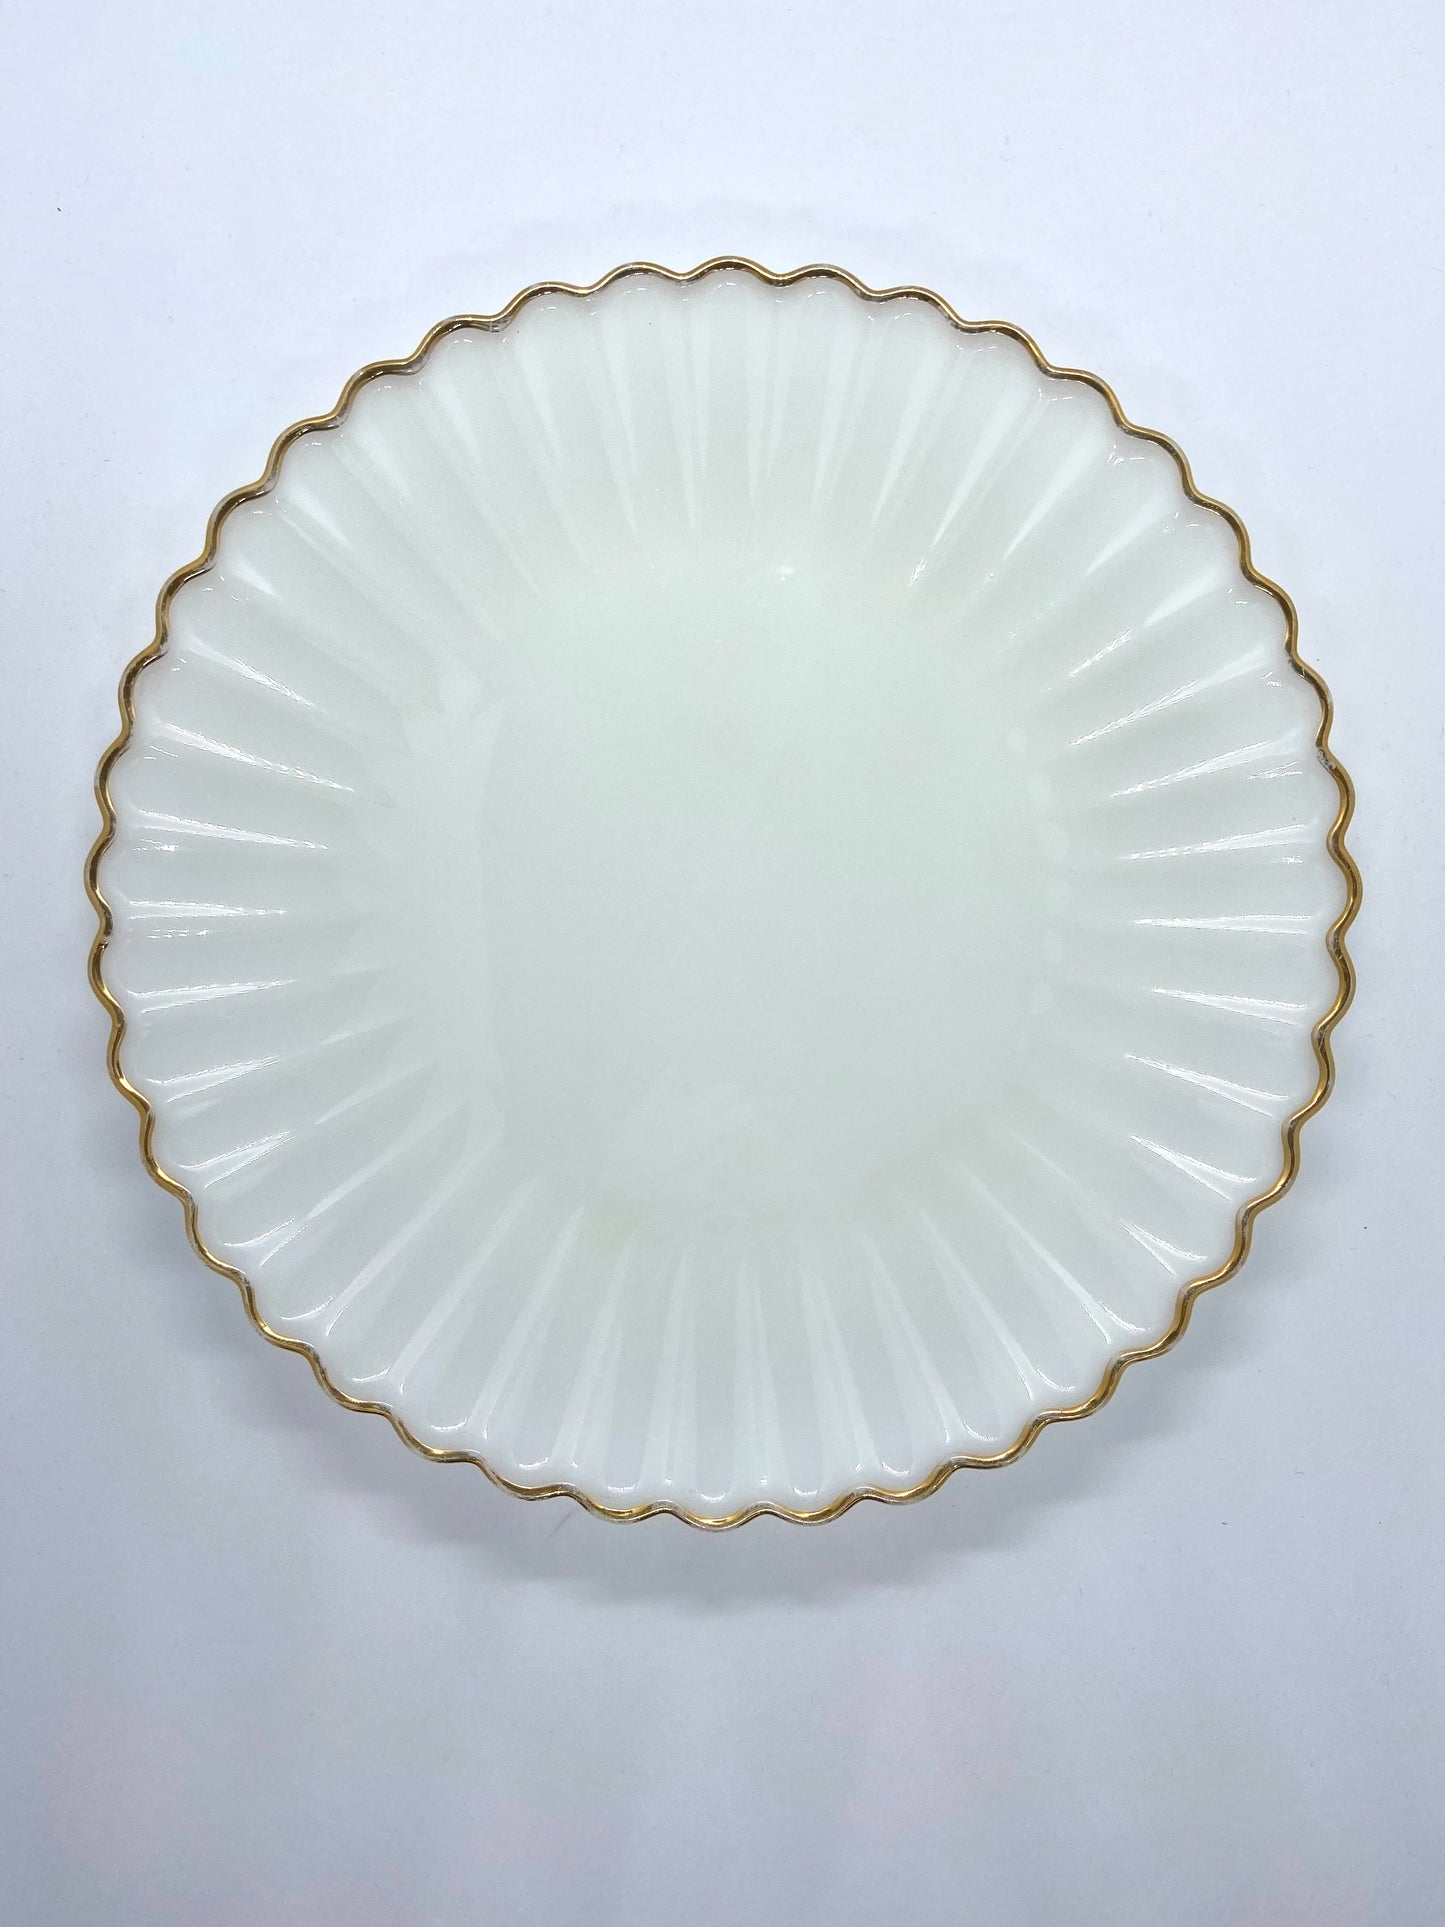 Vintage Large Milk Glass Platter W/ Gold Rim